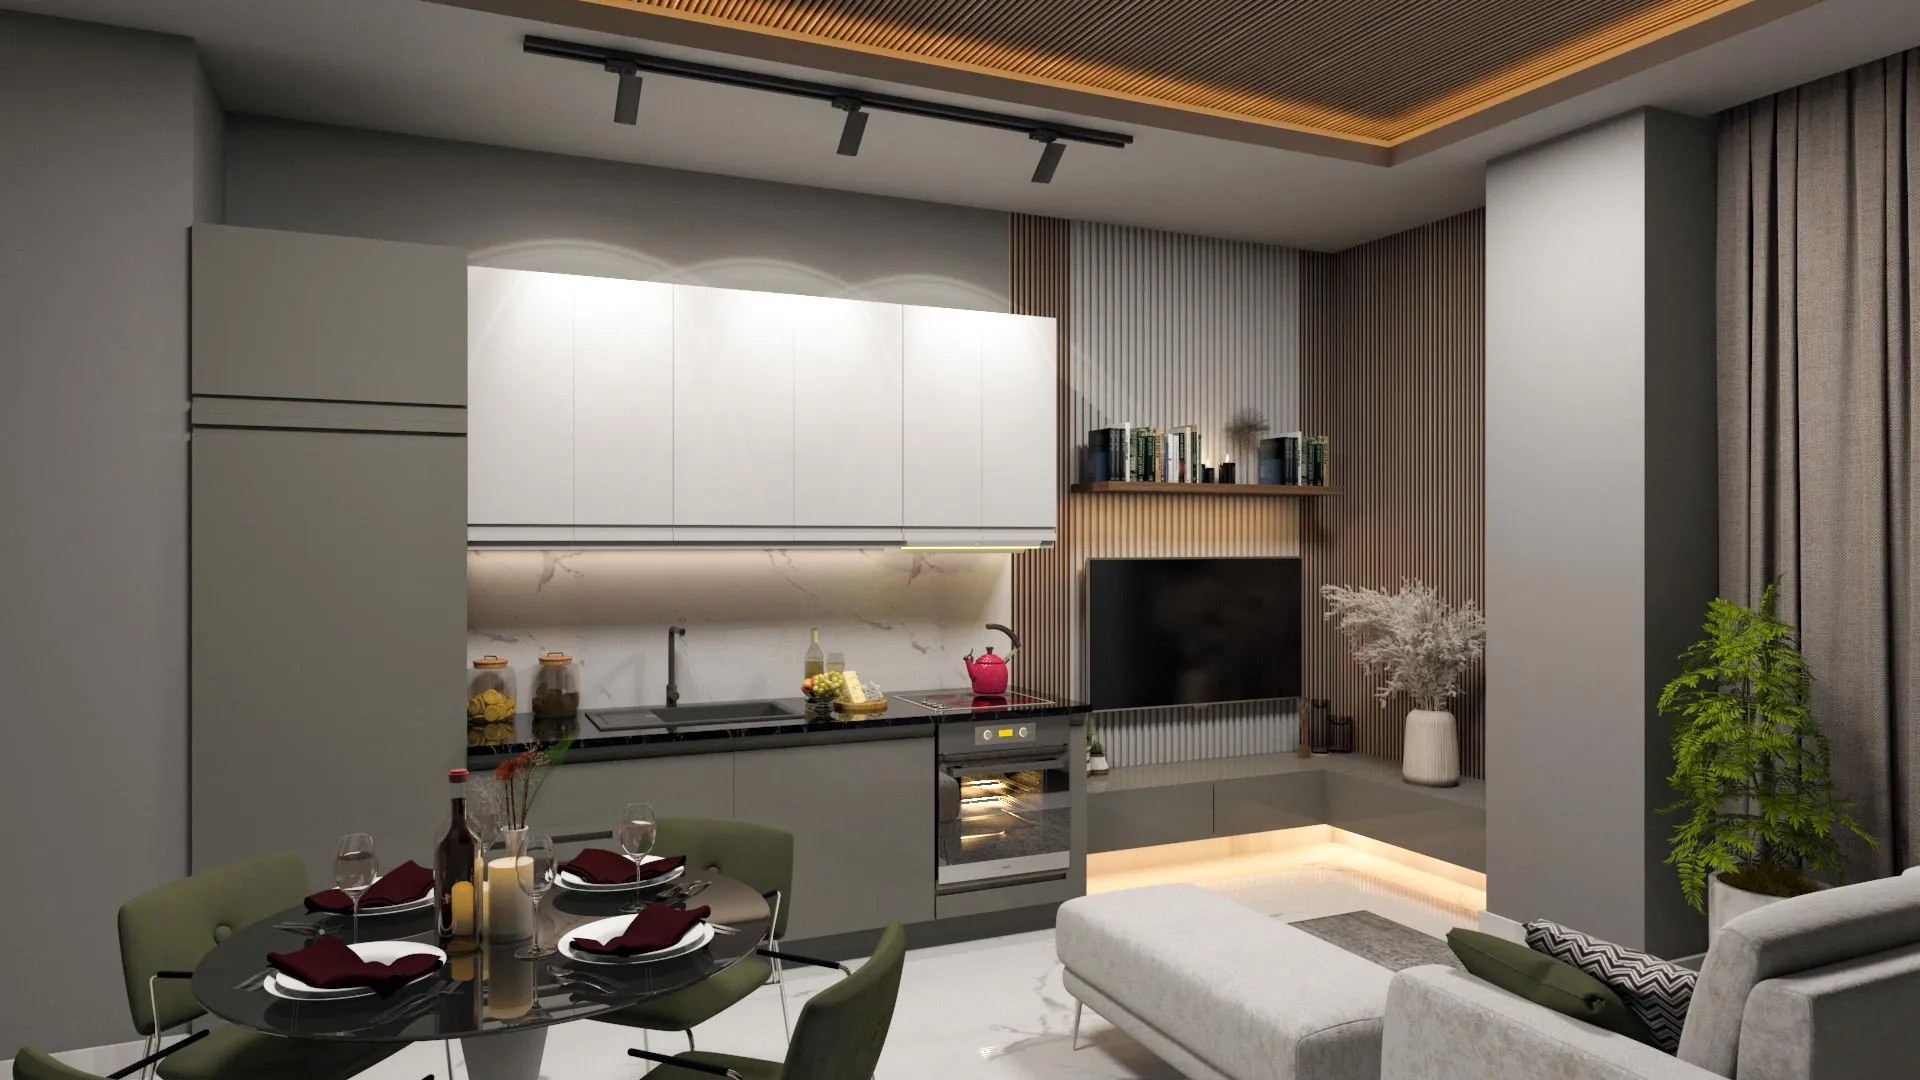 Однокомнатные апартаменты с кухонным гарнитуром общей площадью 51.4м2